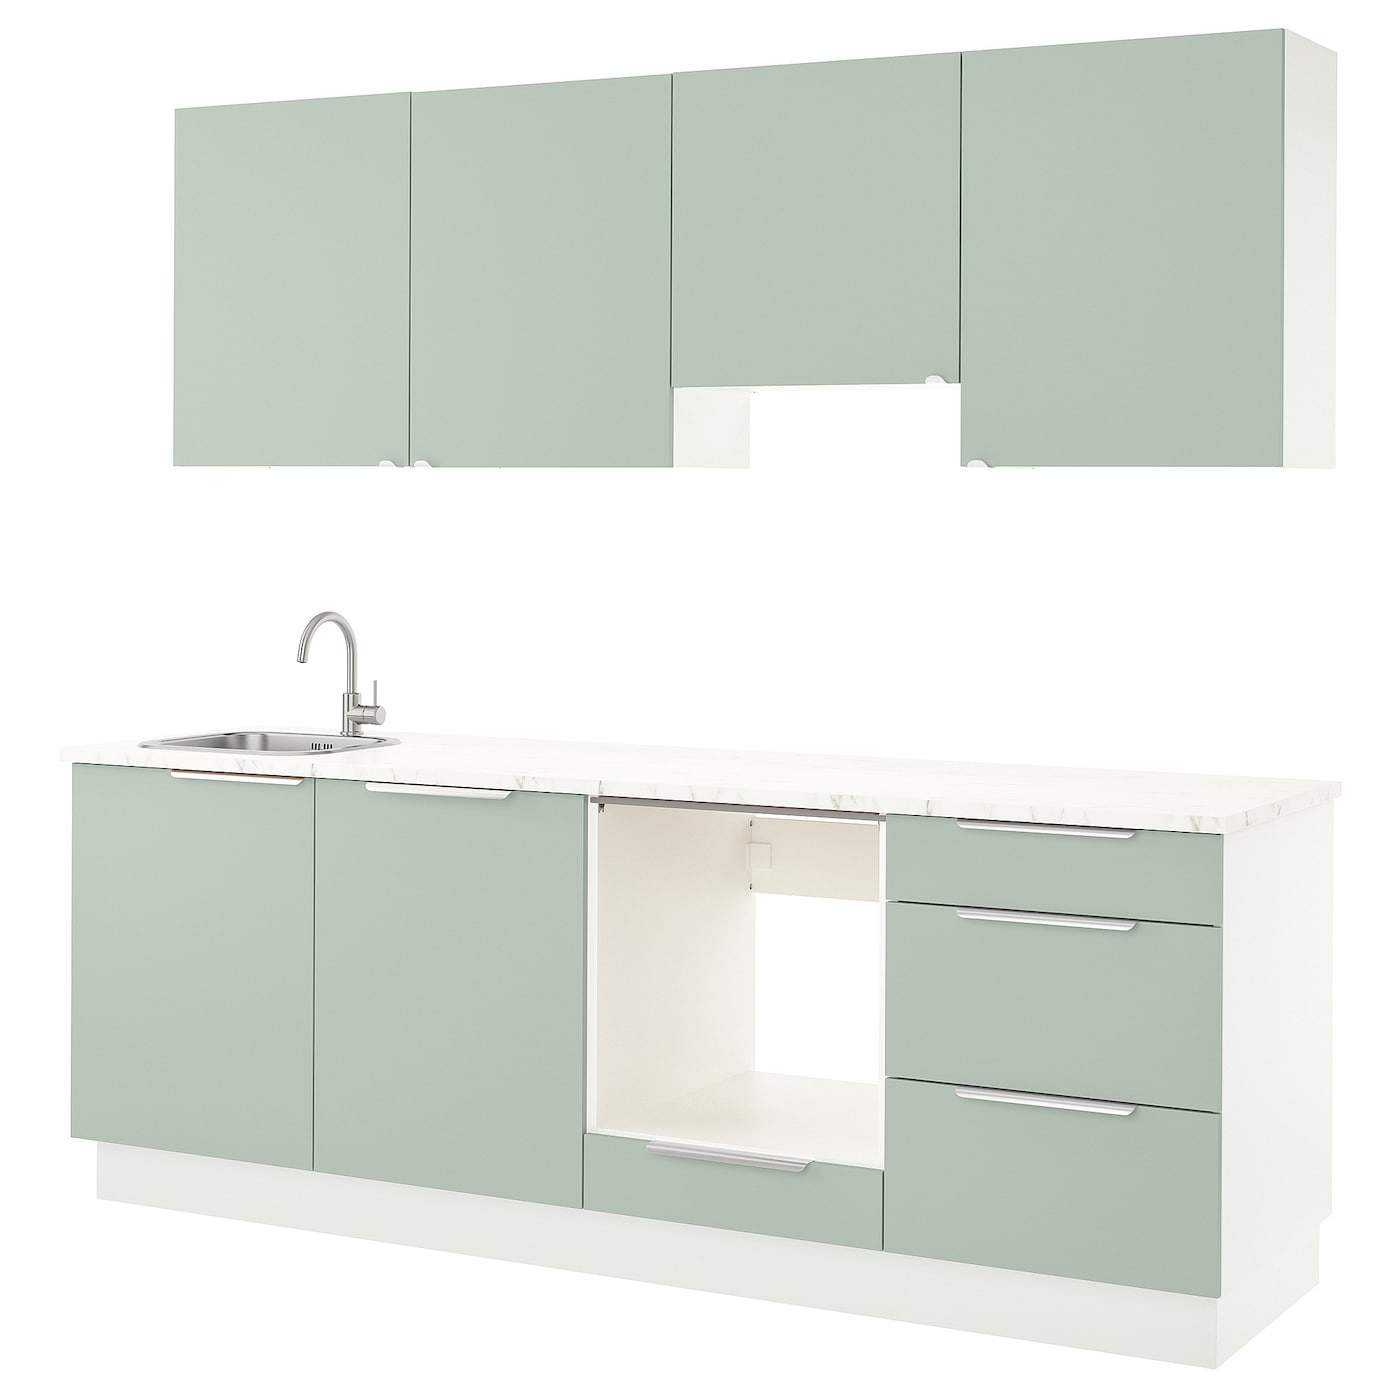 Кухня - ENHET  IKEA/ ЭНХЕТ ИКЕА, 243х222 см, белый/зеленый